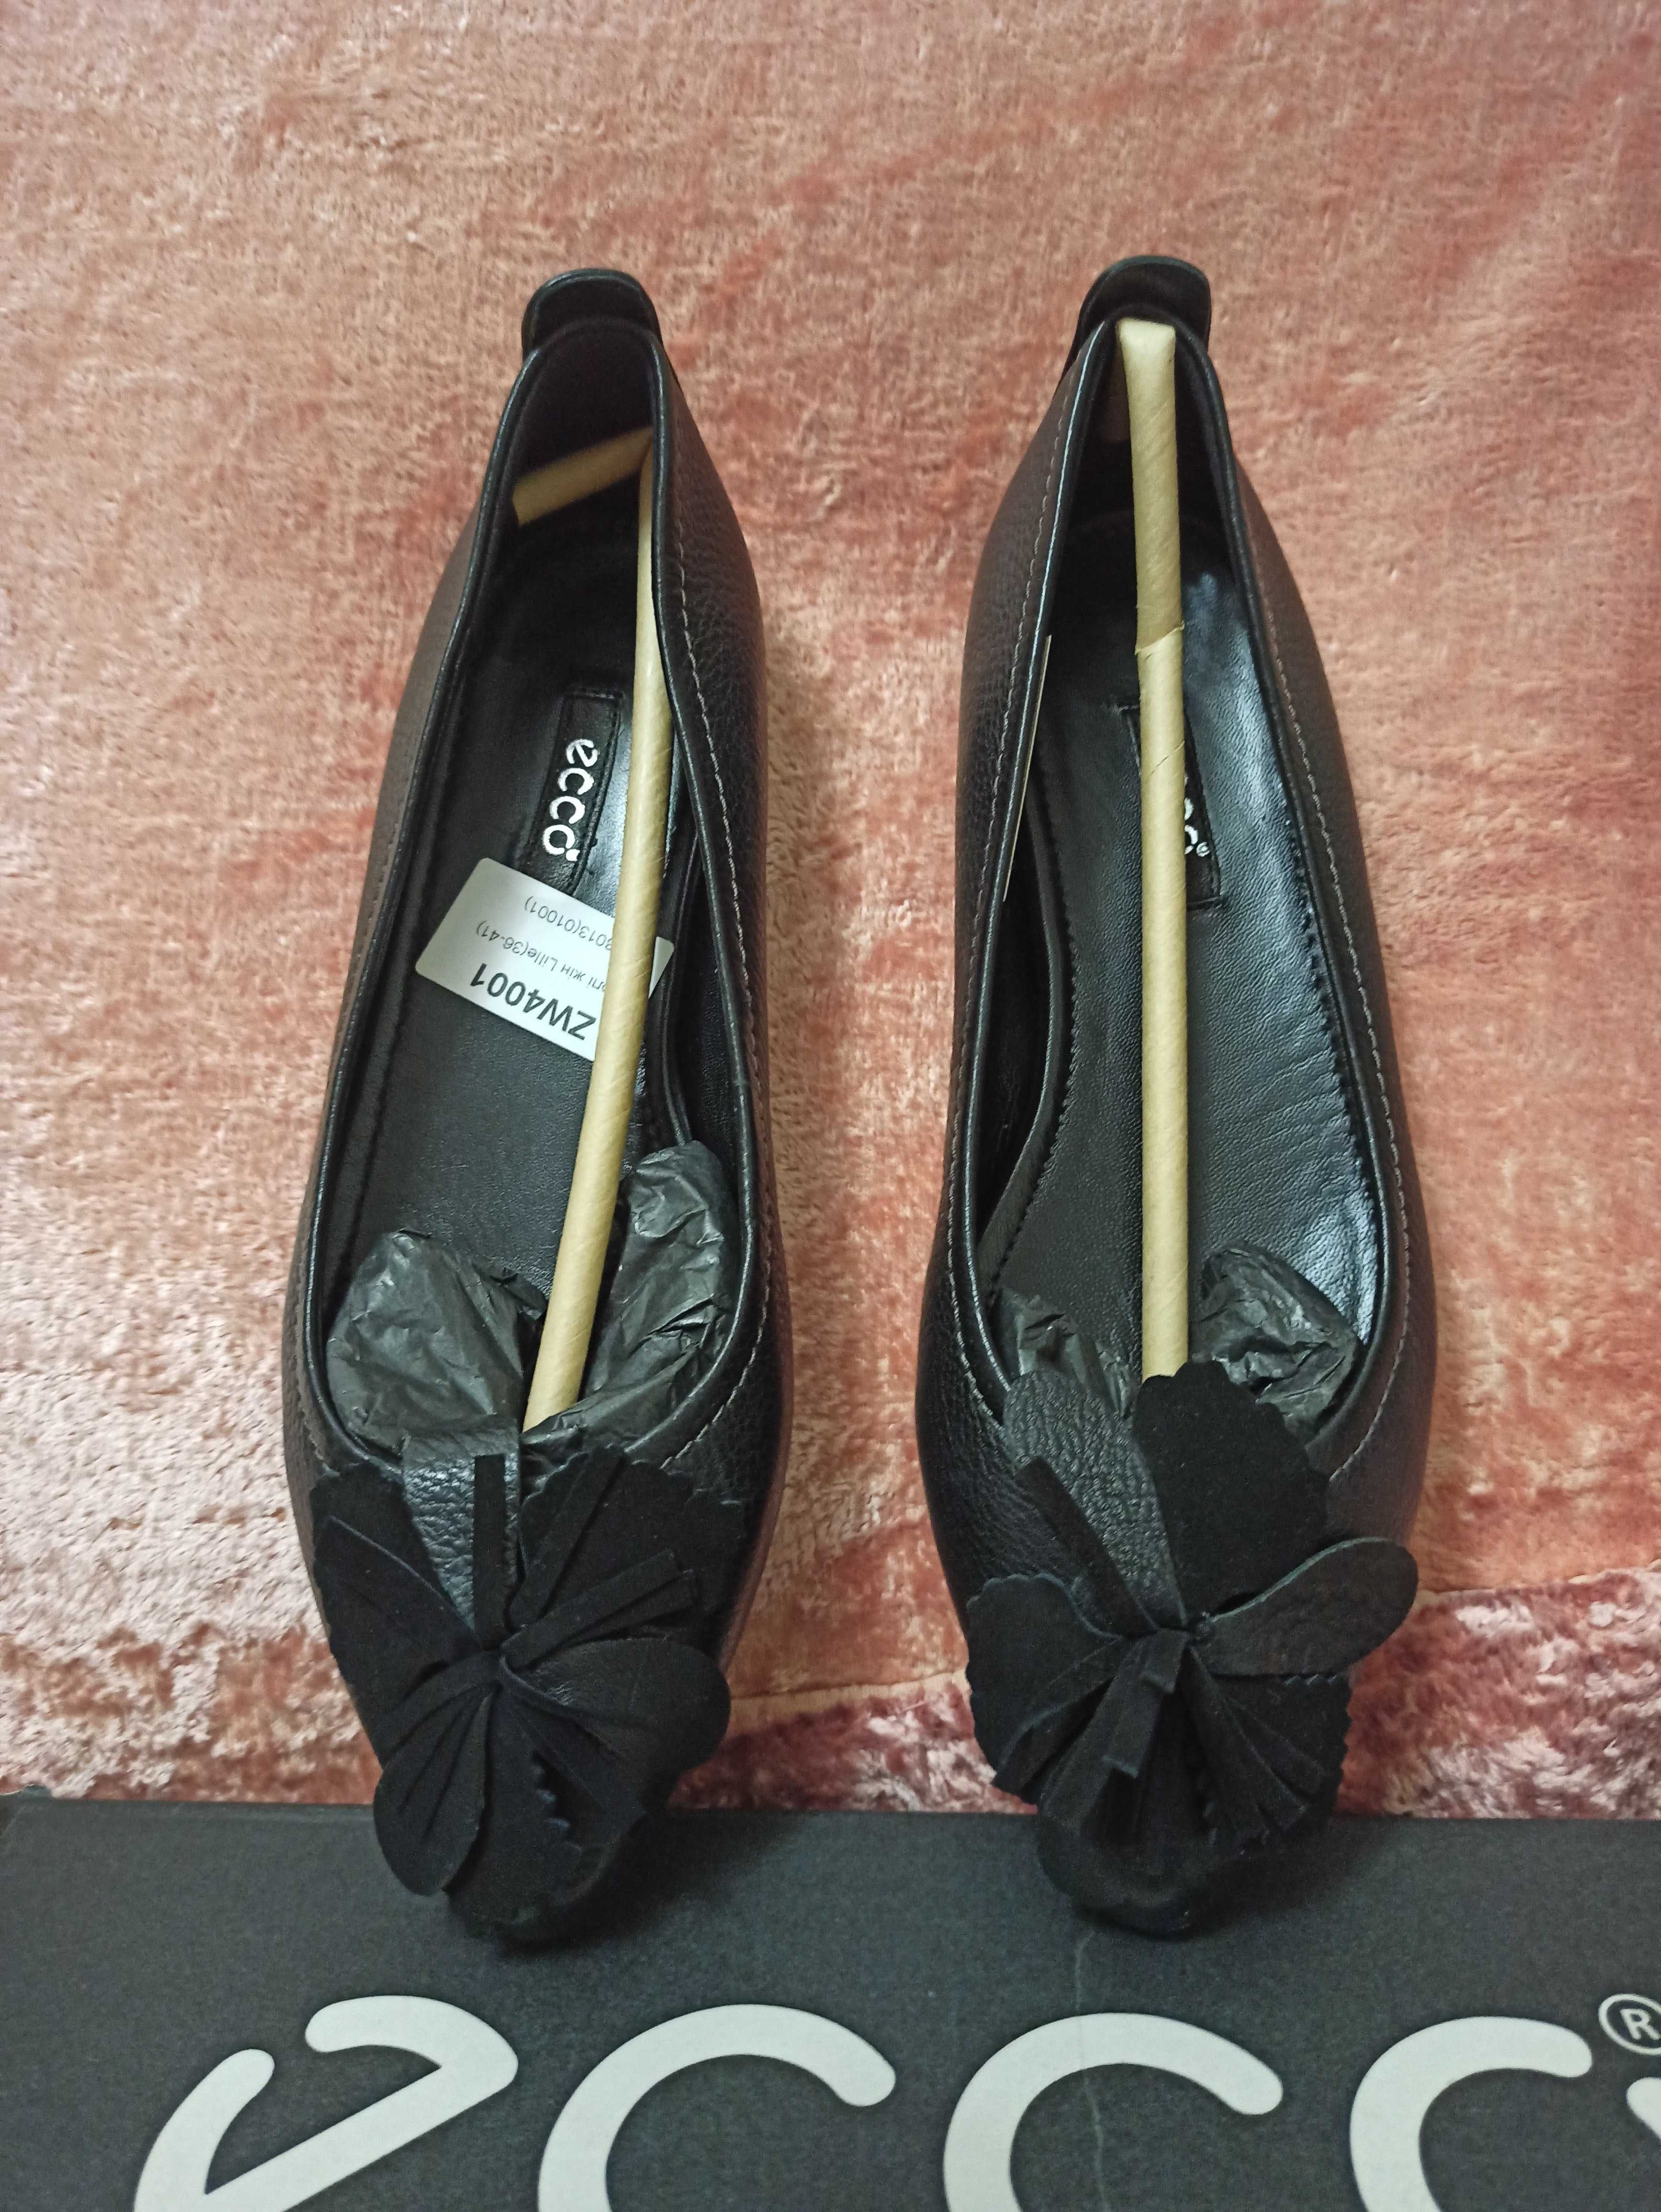 Продам НОВІ жіночі туфлі (балетки) торгової марки Ecco.  36р.